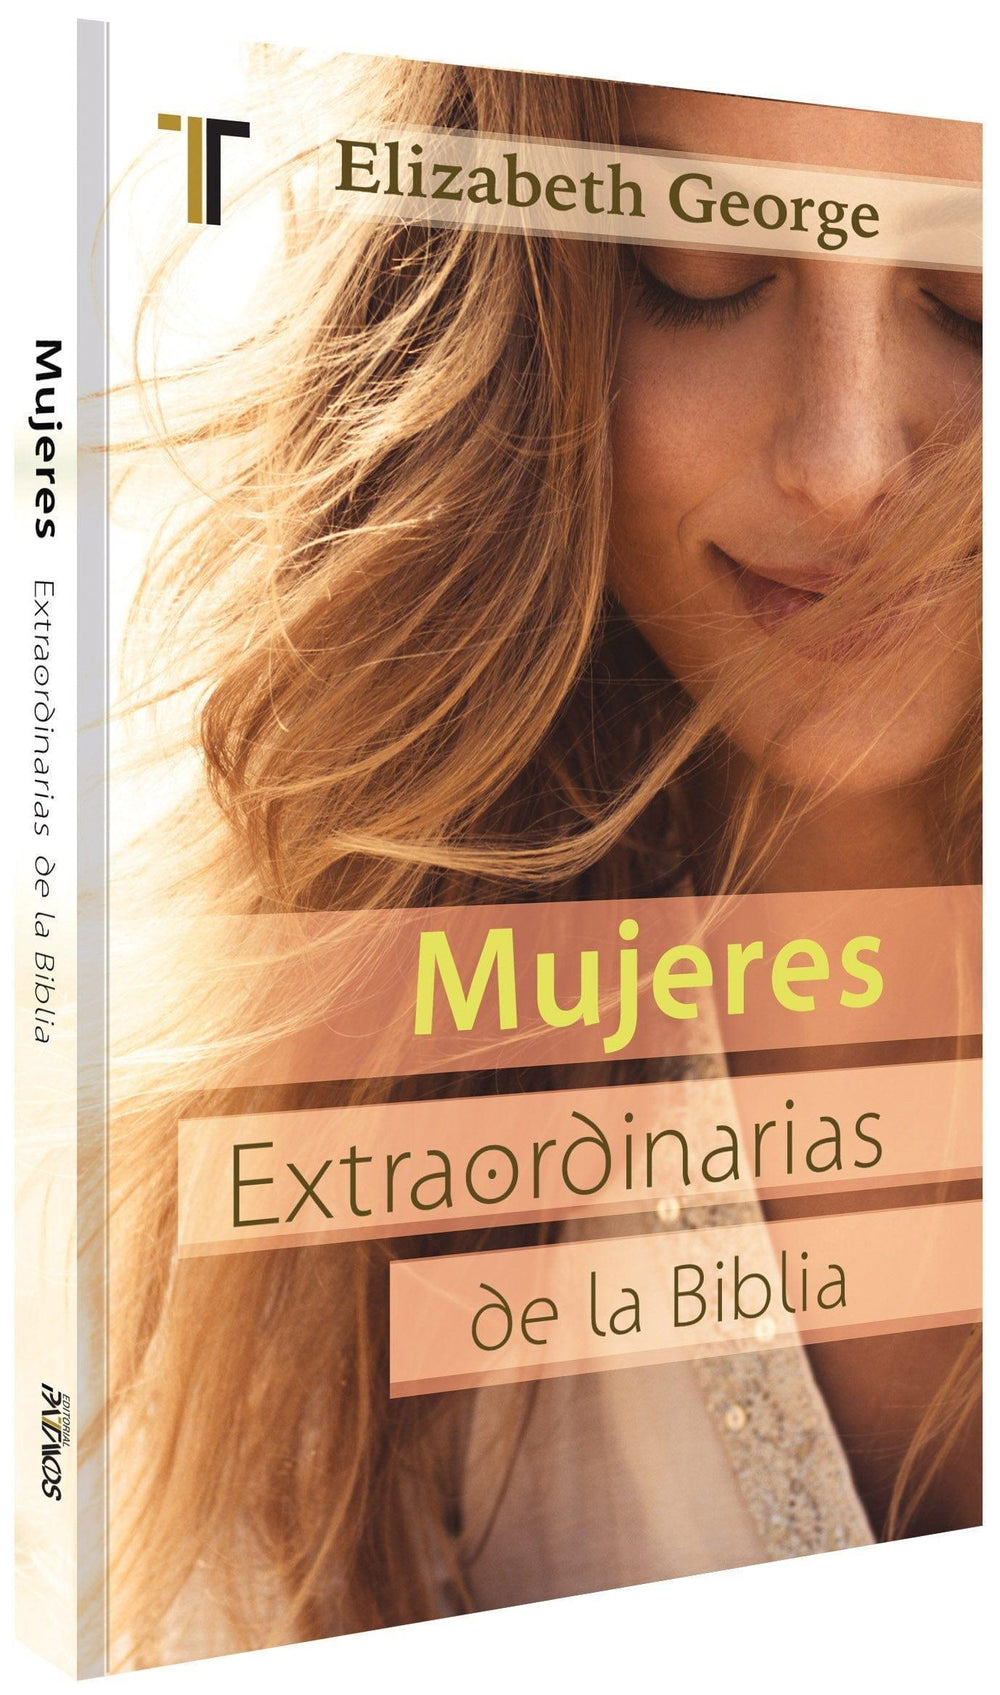 Mujeres extraordinarias de la Biblia - Elizabeth George (Bolsillos) - Pura Vida Books